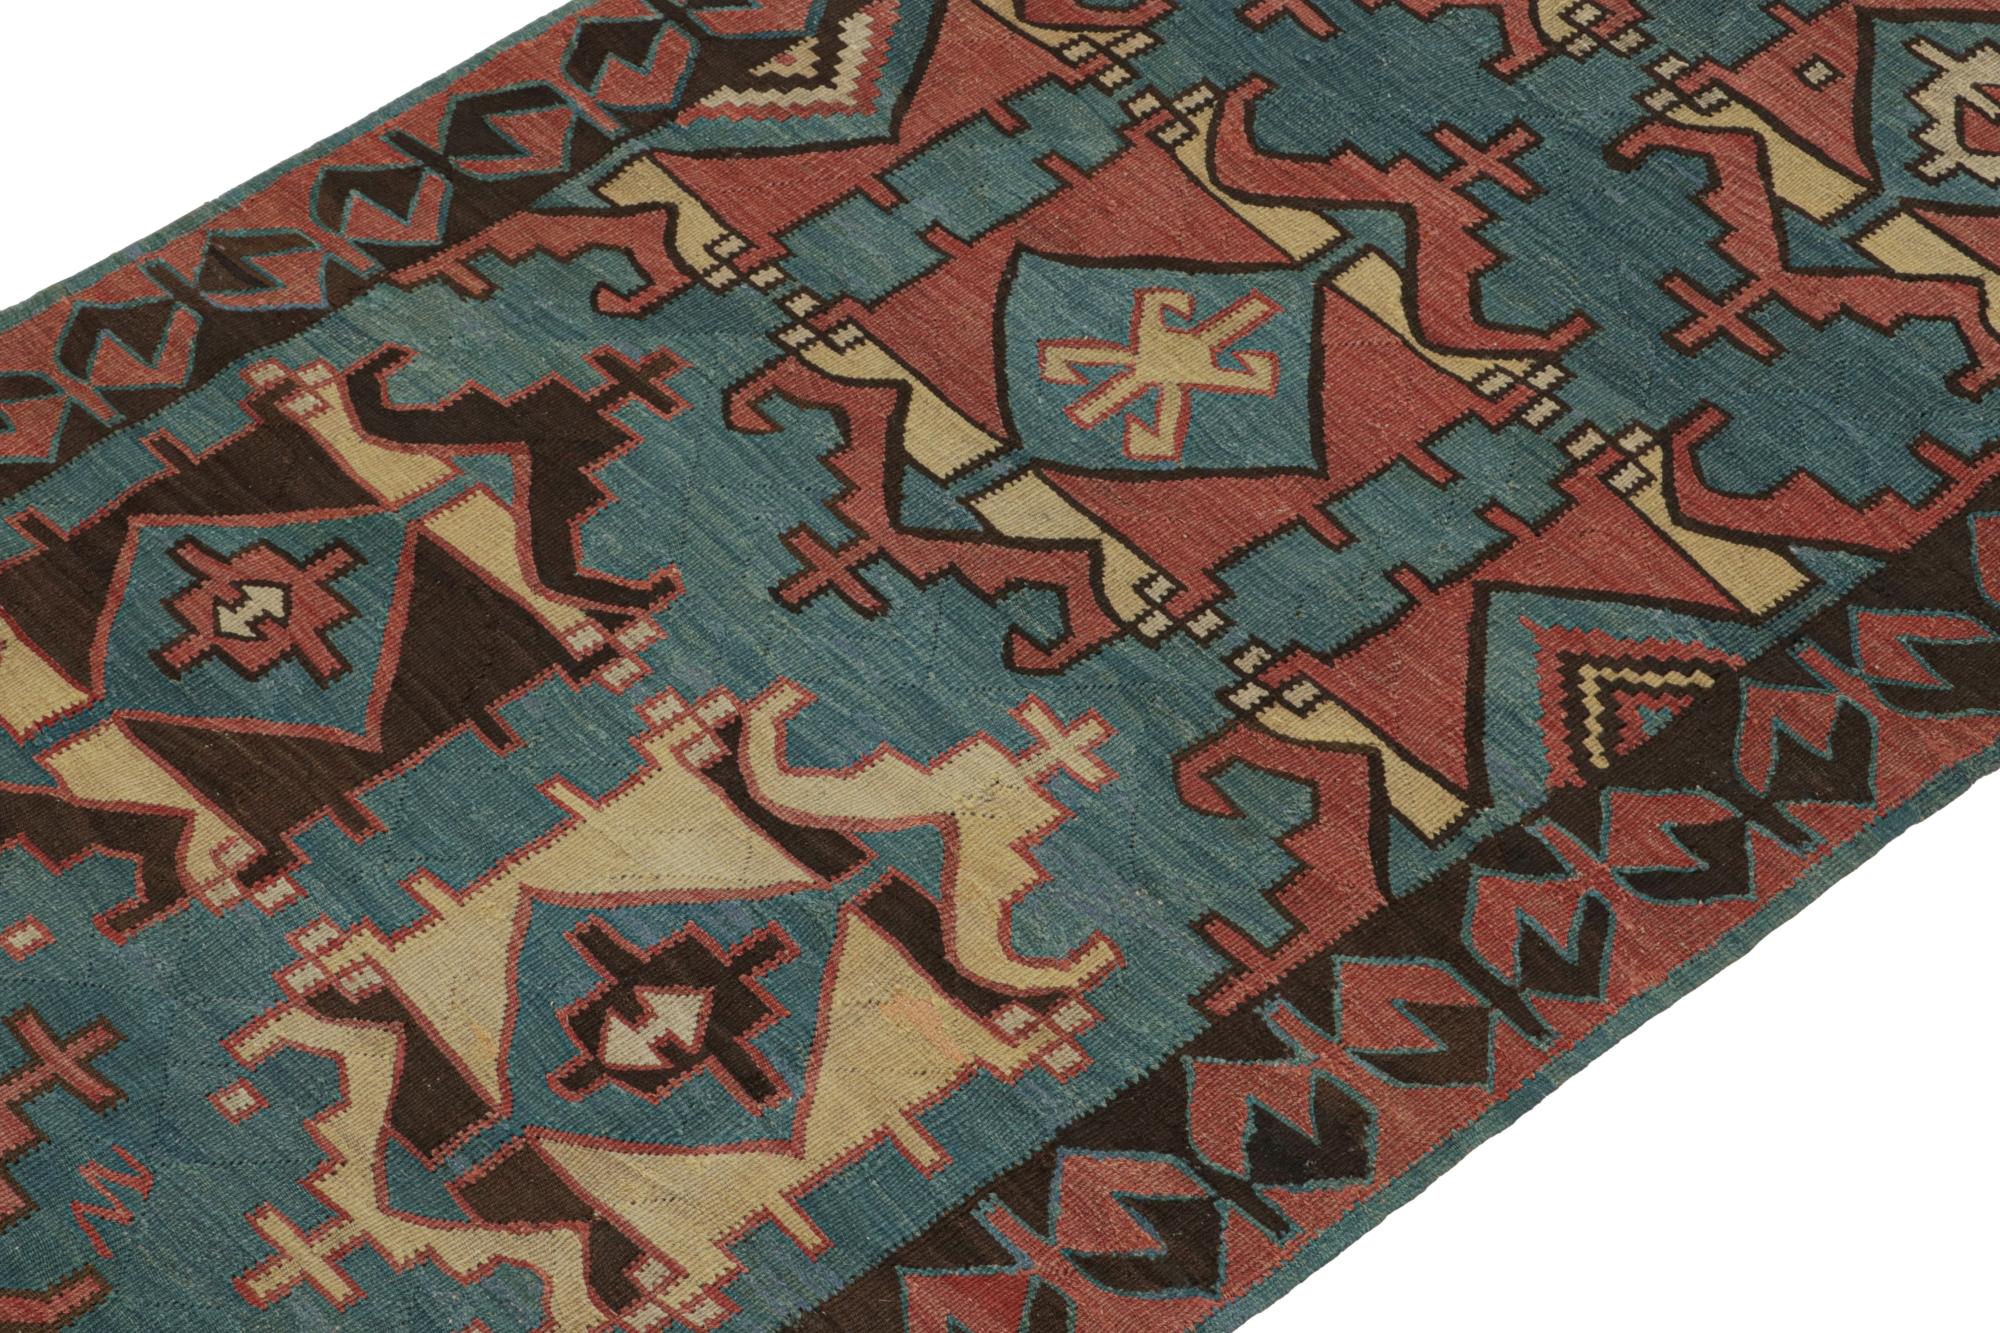 Ce kilim persan vintage 4x9 est tissé à la main en laine et date des années 1950-1960.

Sur le Design : 

Ce tissage plat présente des médaillons et des motifs géométriques nets dans un bleu profond et un rouge brique avec des notes de beige et de